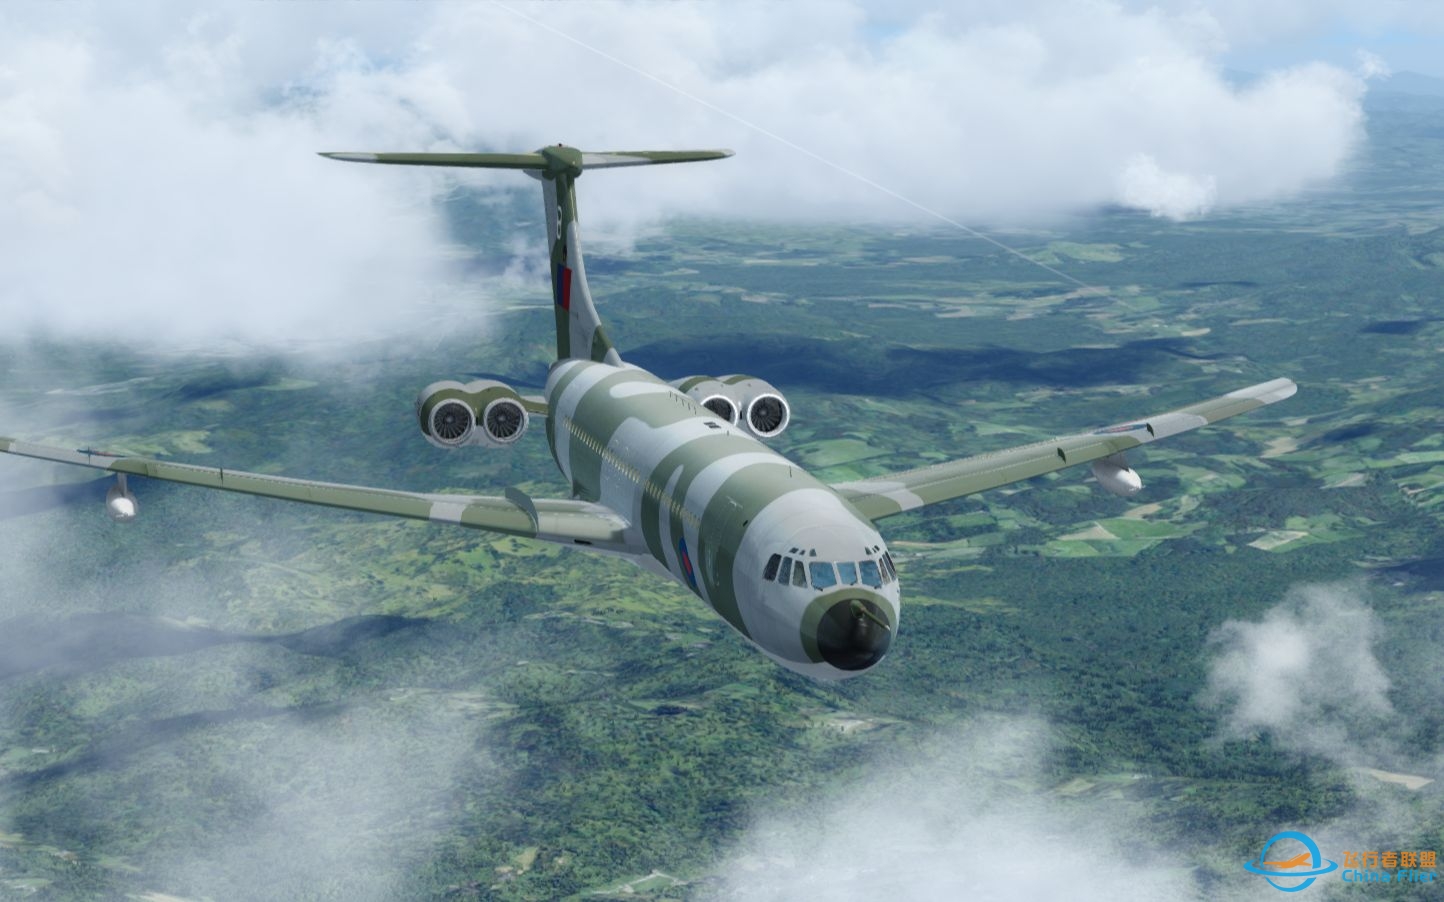 【Prepar3D落地】英国皇家空军VC-10C1K加油运输机落地俄罗斯海参崴机场废弃的25R跑道-8474 